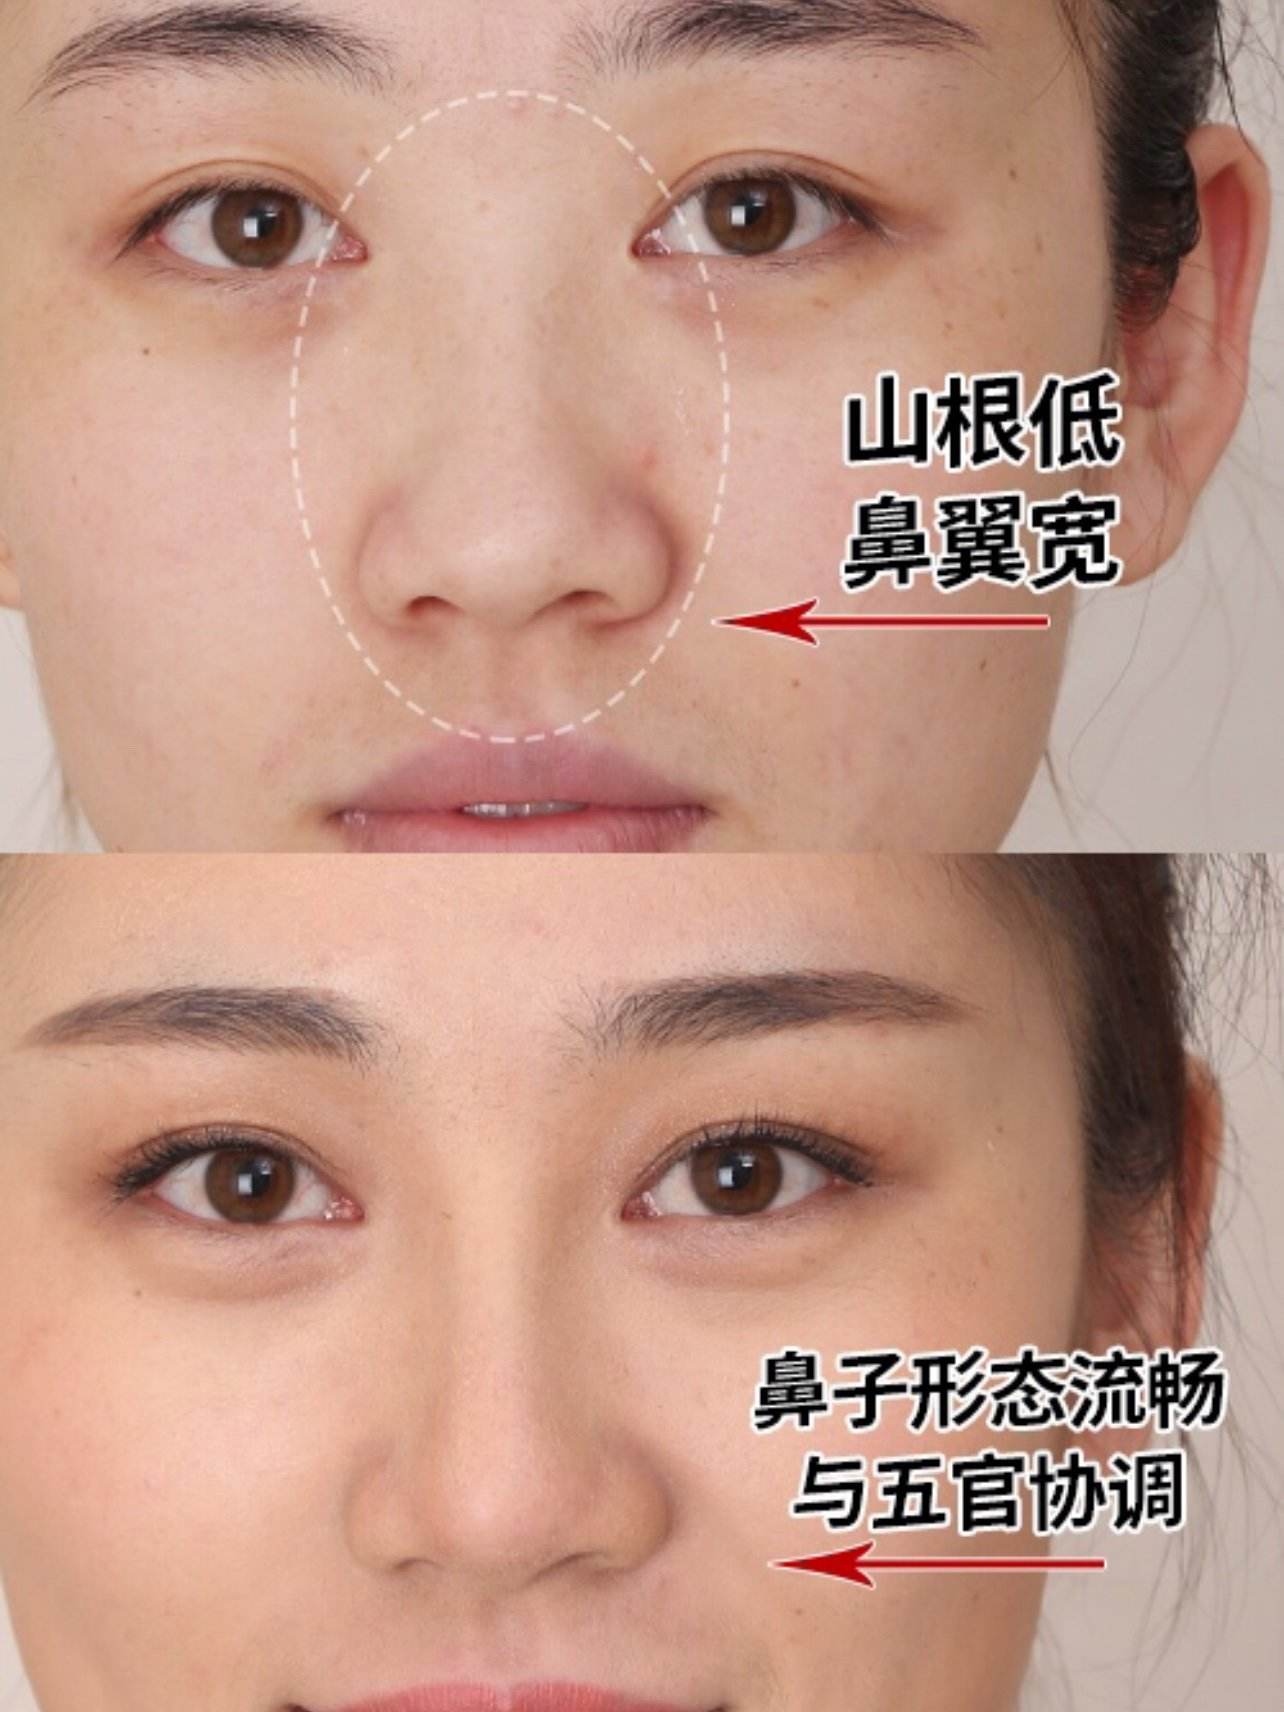 隆鼻重修二次隆鼻-精緻秀氣鼻型案例分享-韋志曄醫師